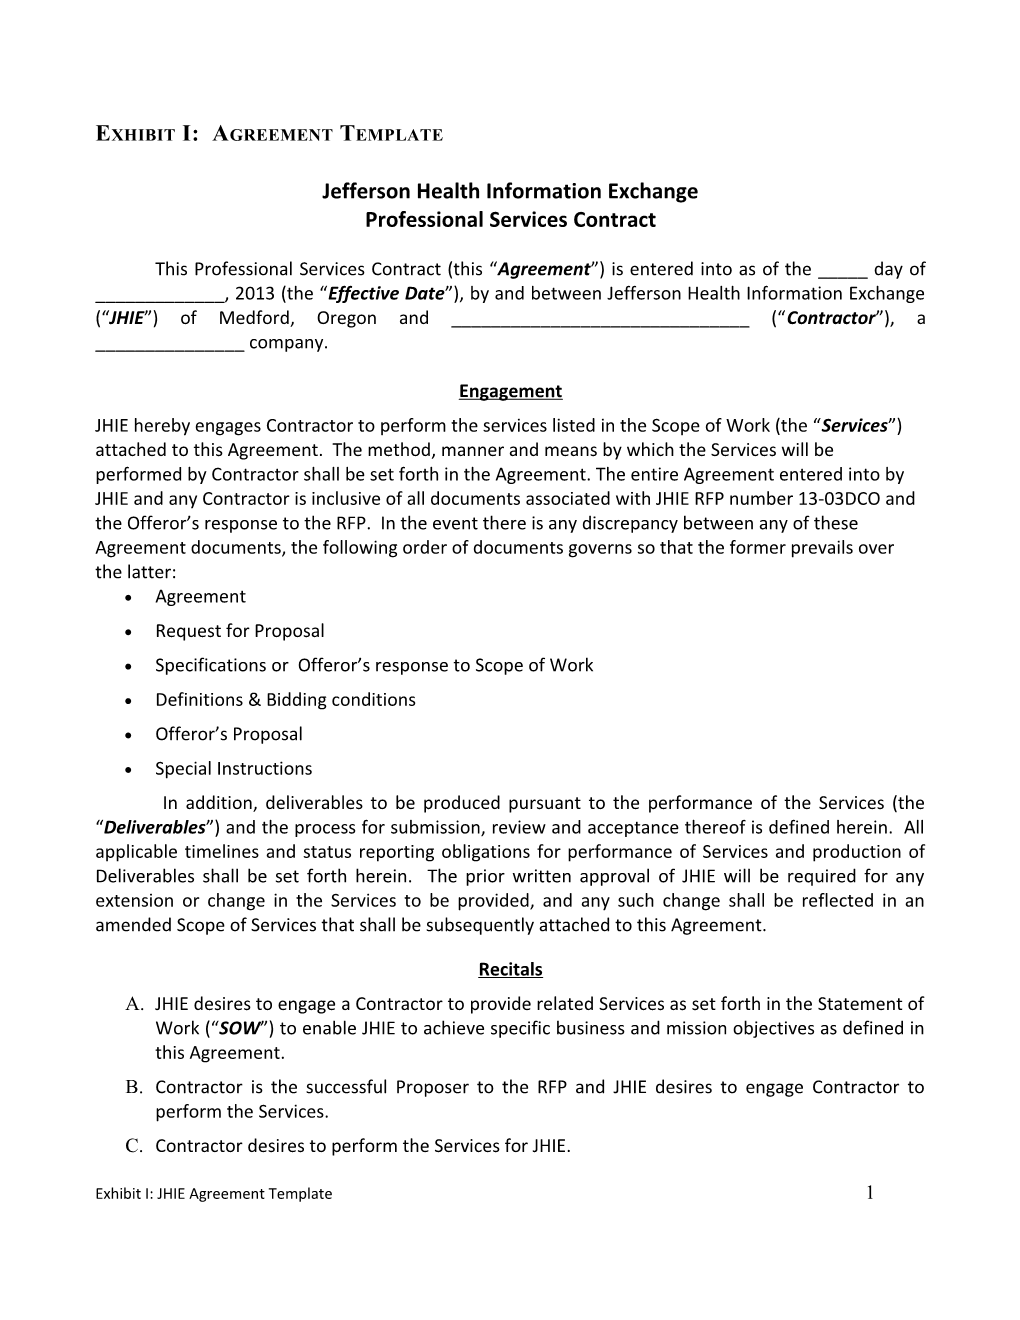 Jefferson Health Information Exchange